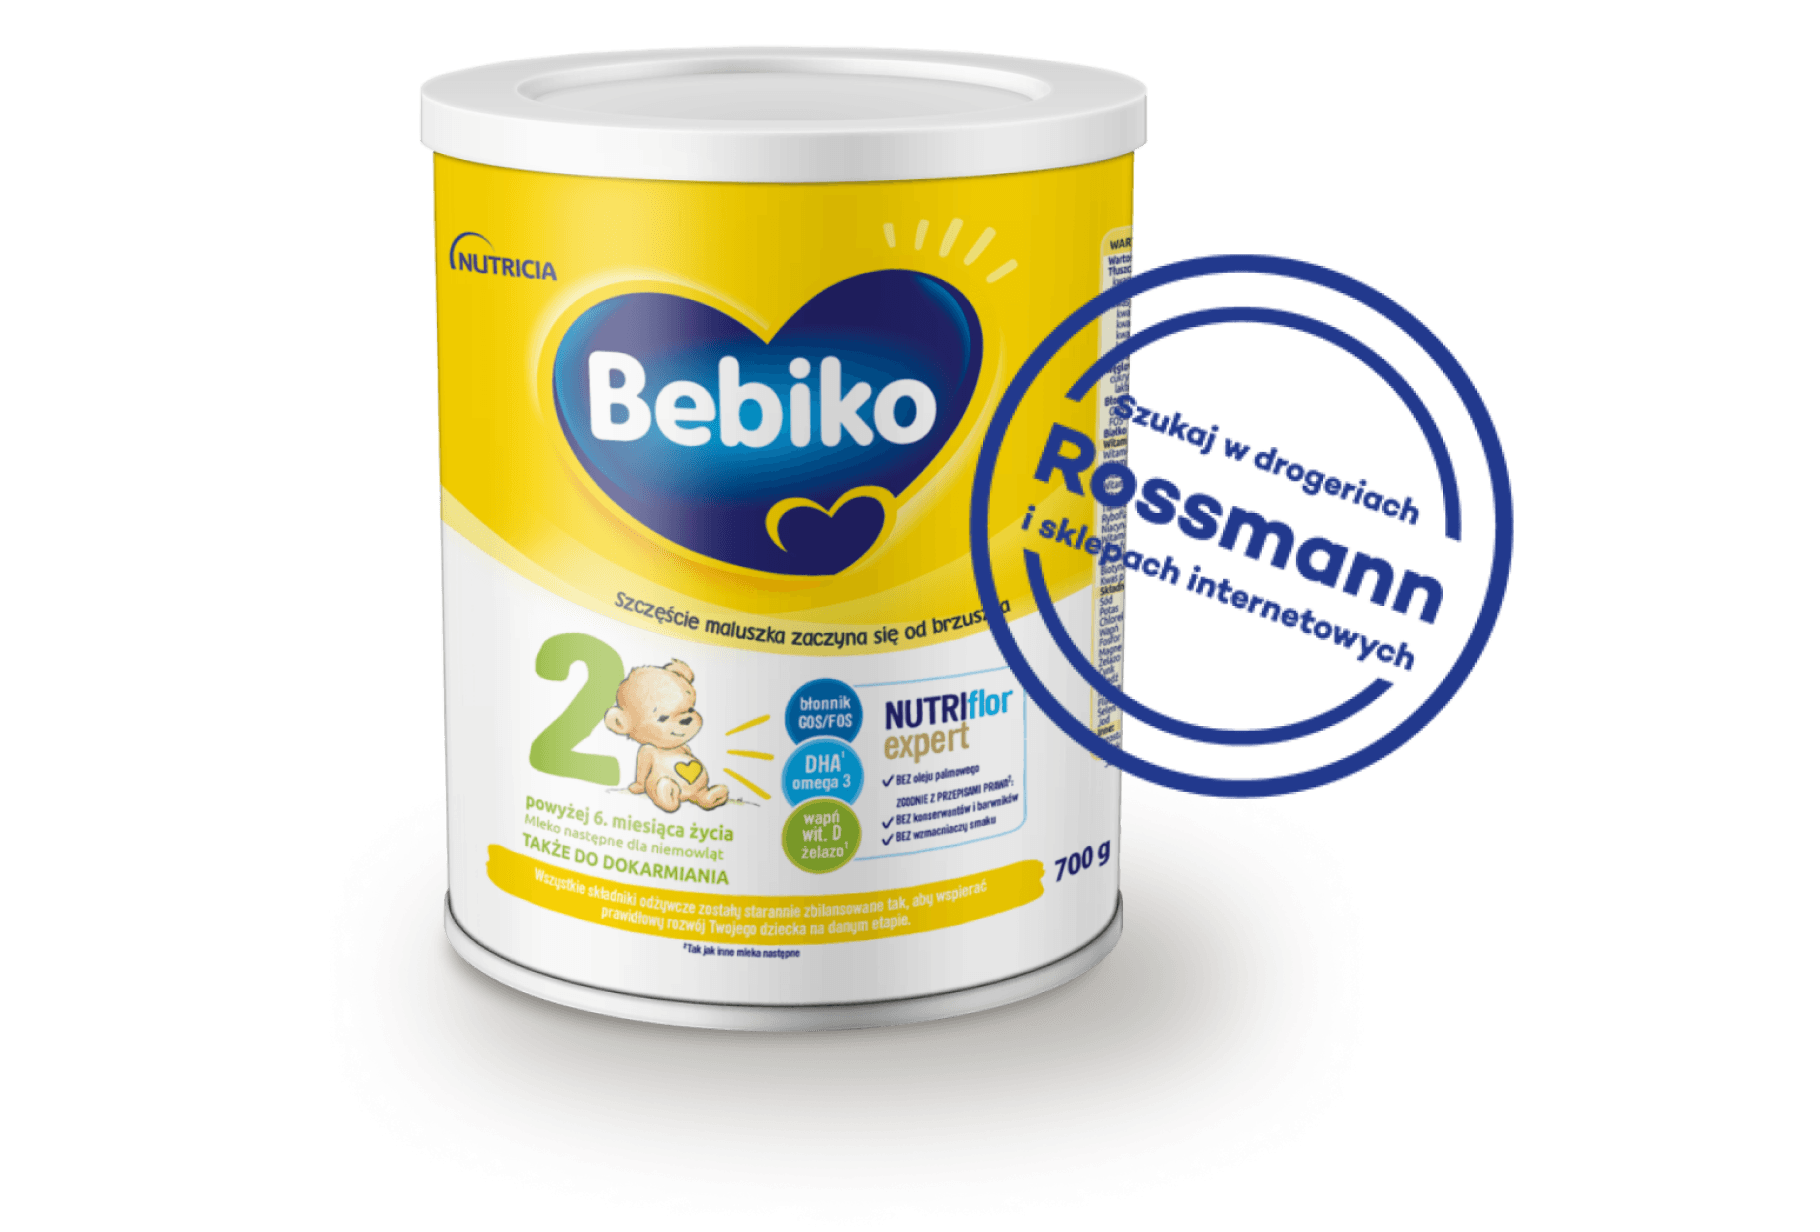 Bebiko 2 NUTRIflor Expert zawiera (4).png